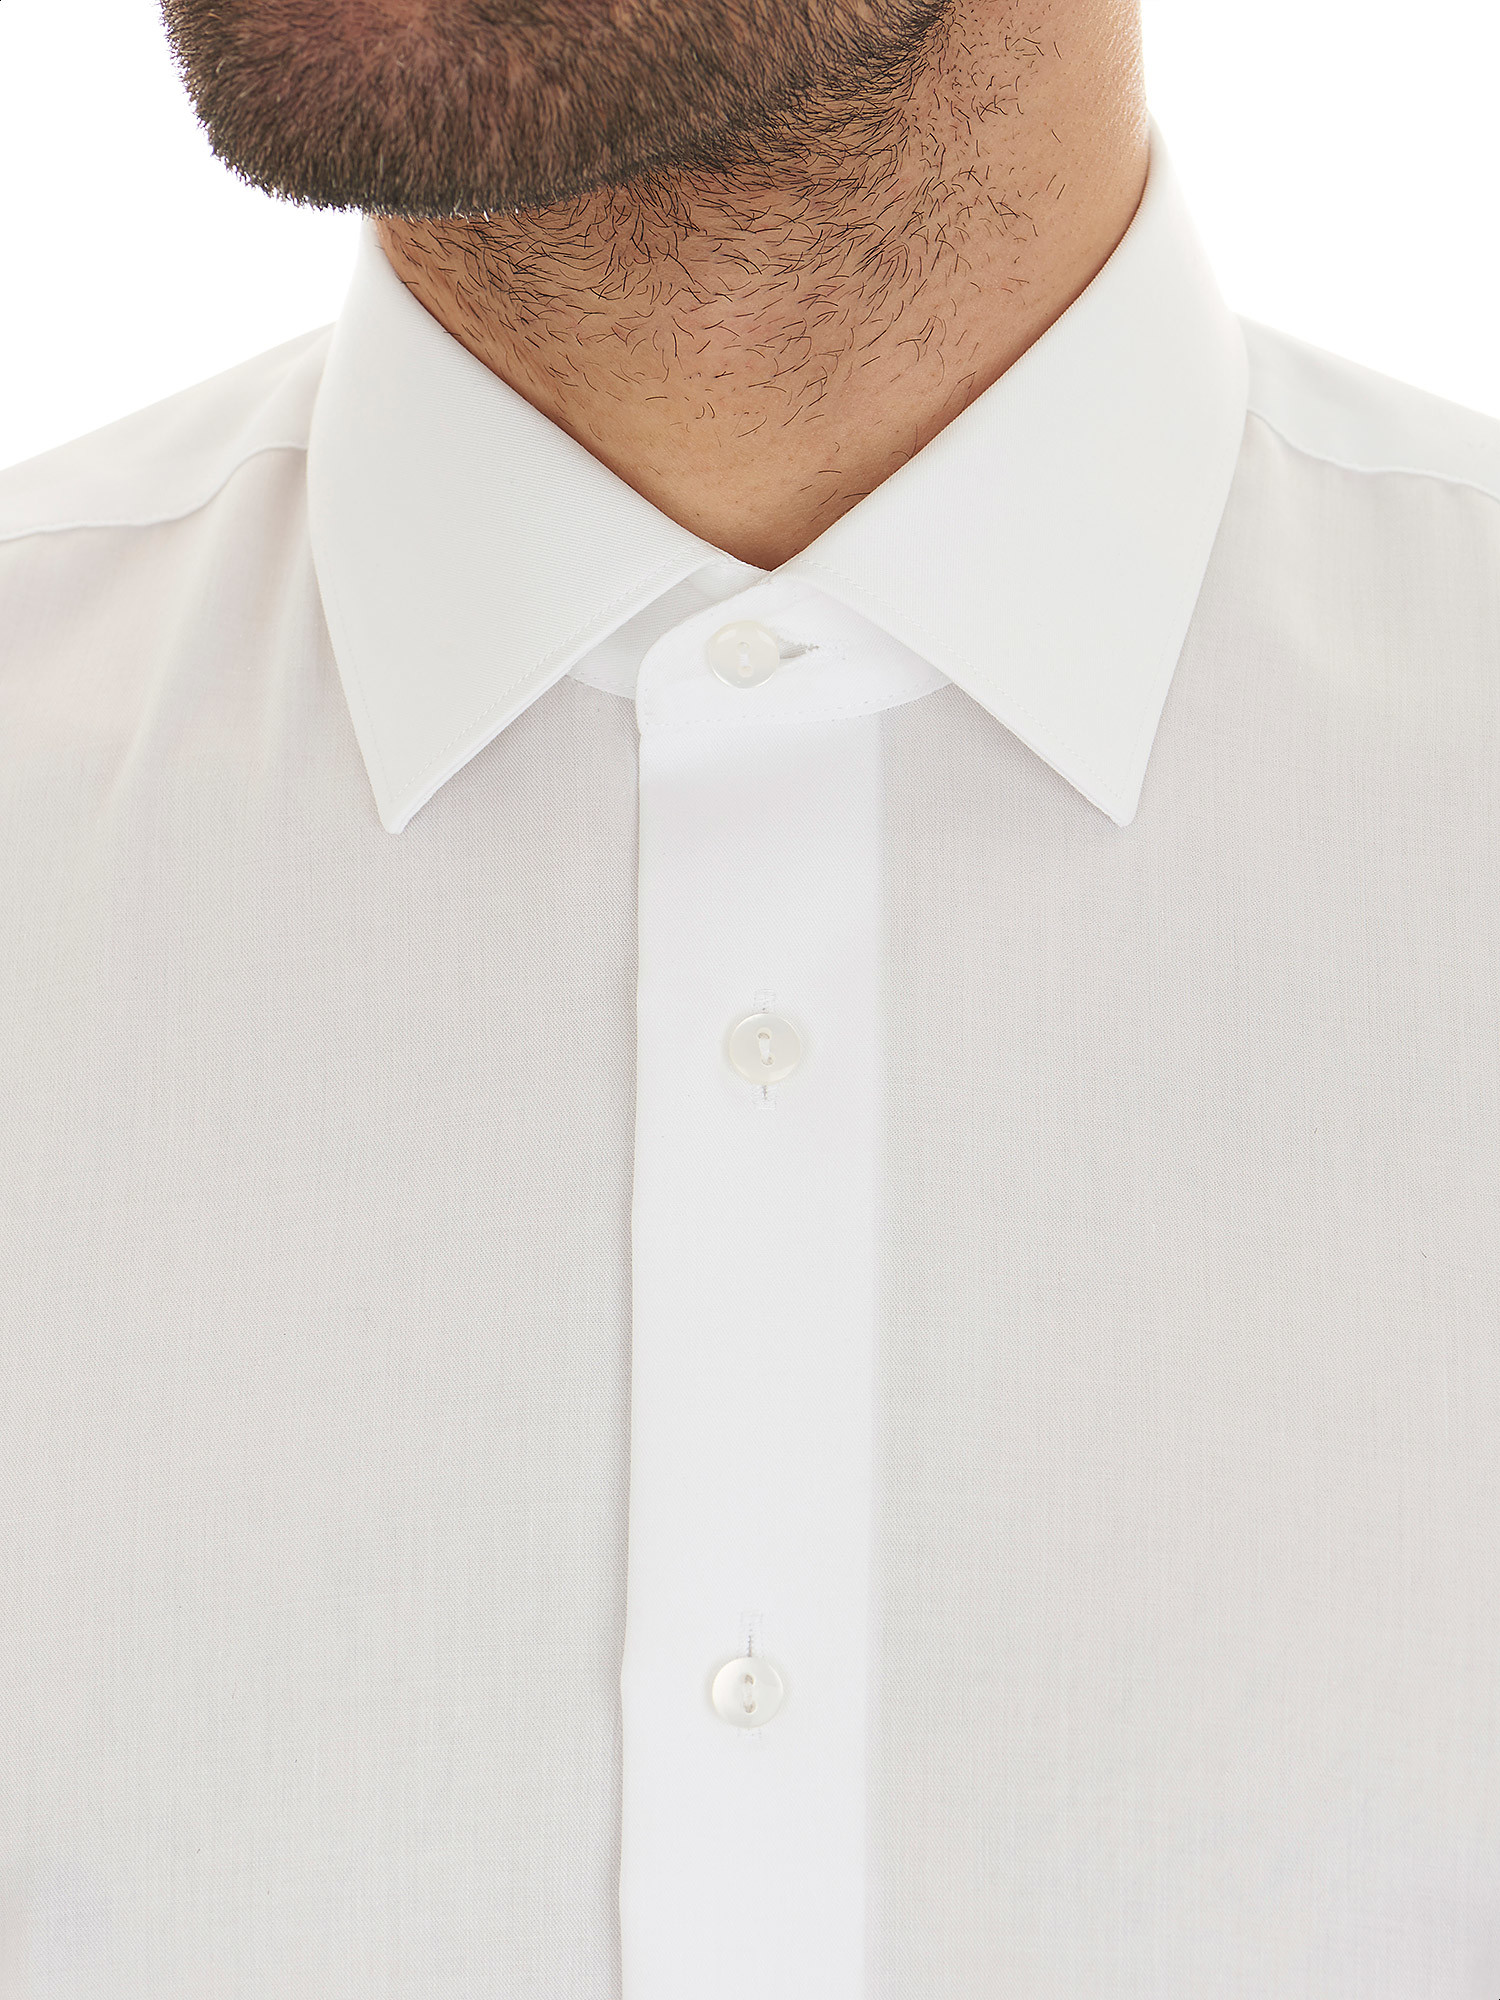 Non-iron shirt 100% white cotton - Marcus